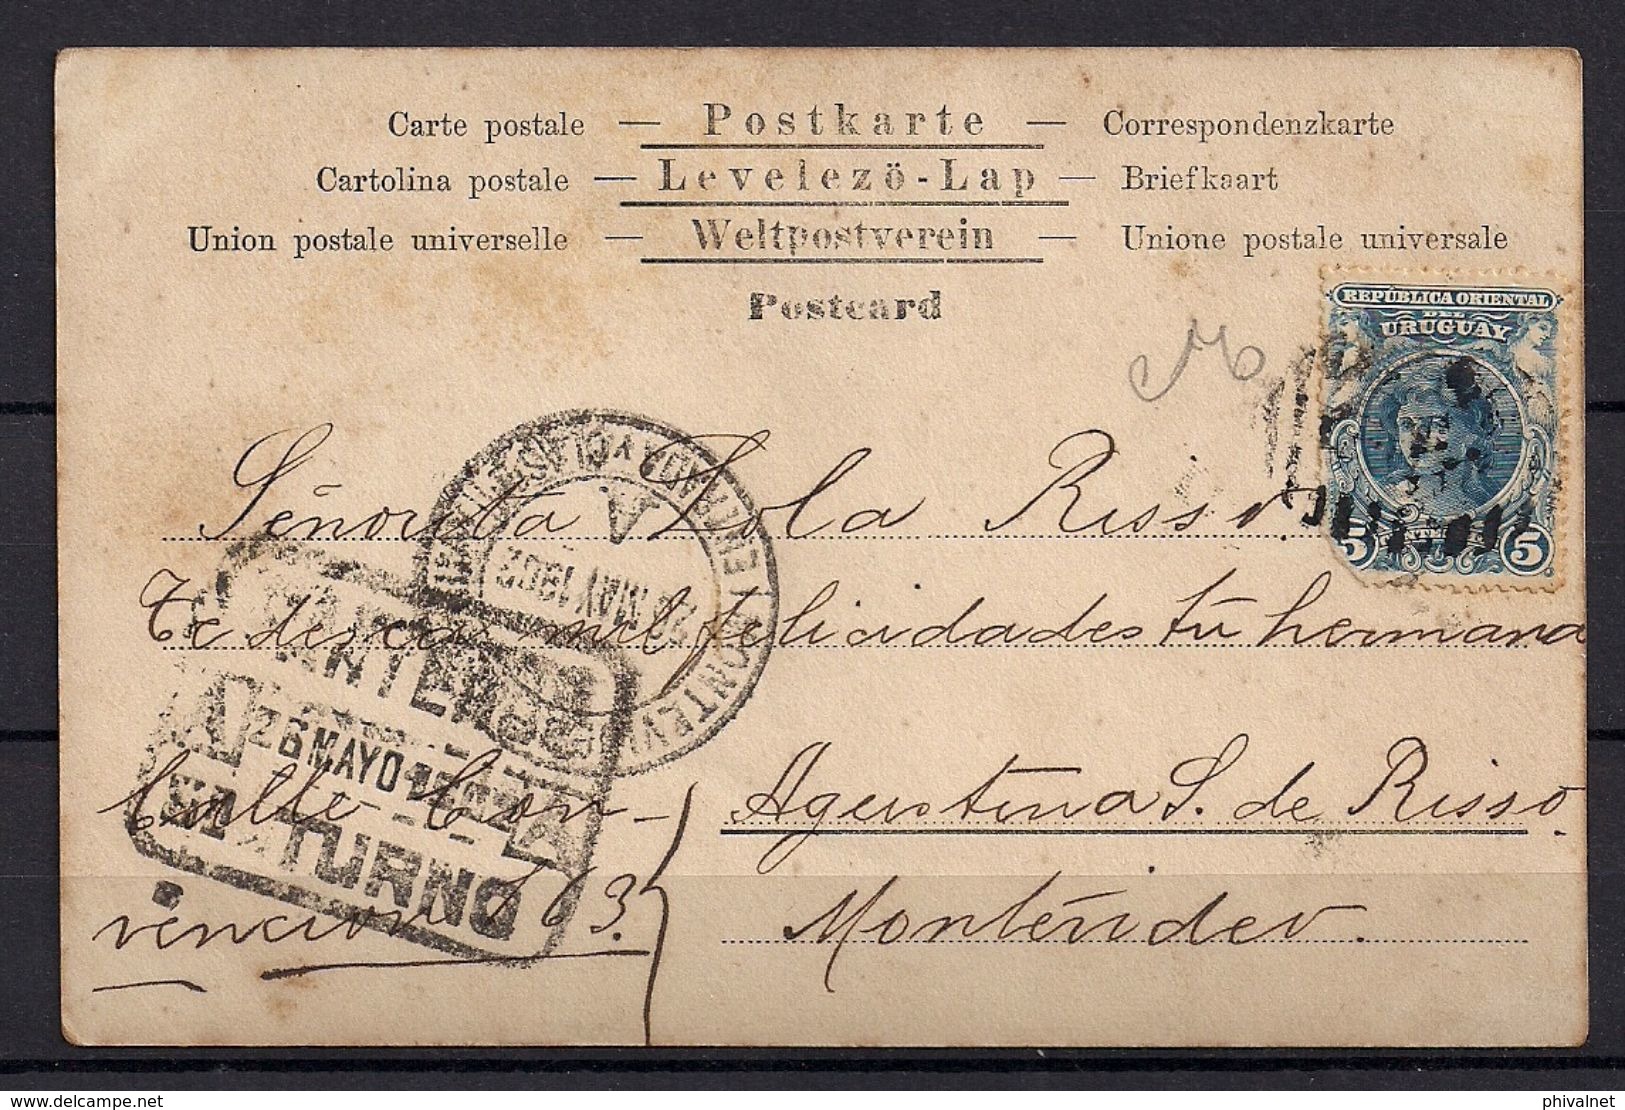 1902 , URUGUAY , TARJETA POSTAL CIRCULADA , LLEGADA , MARCA DE TURNO DE CARTERO - MONTEVIDEO - Uruguay